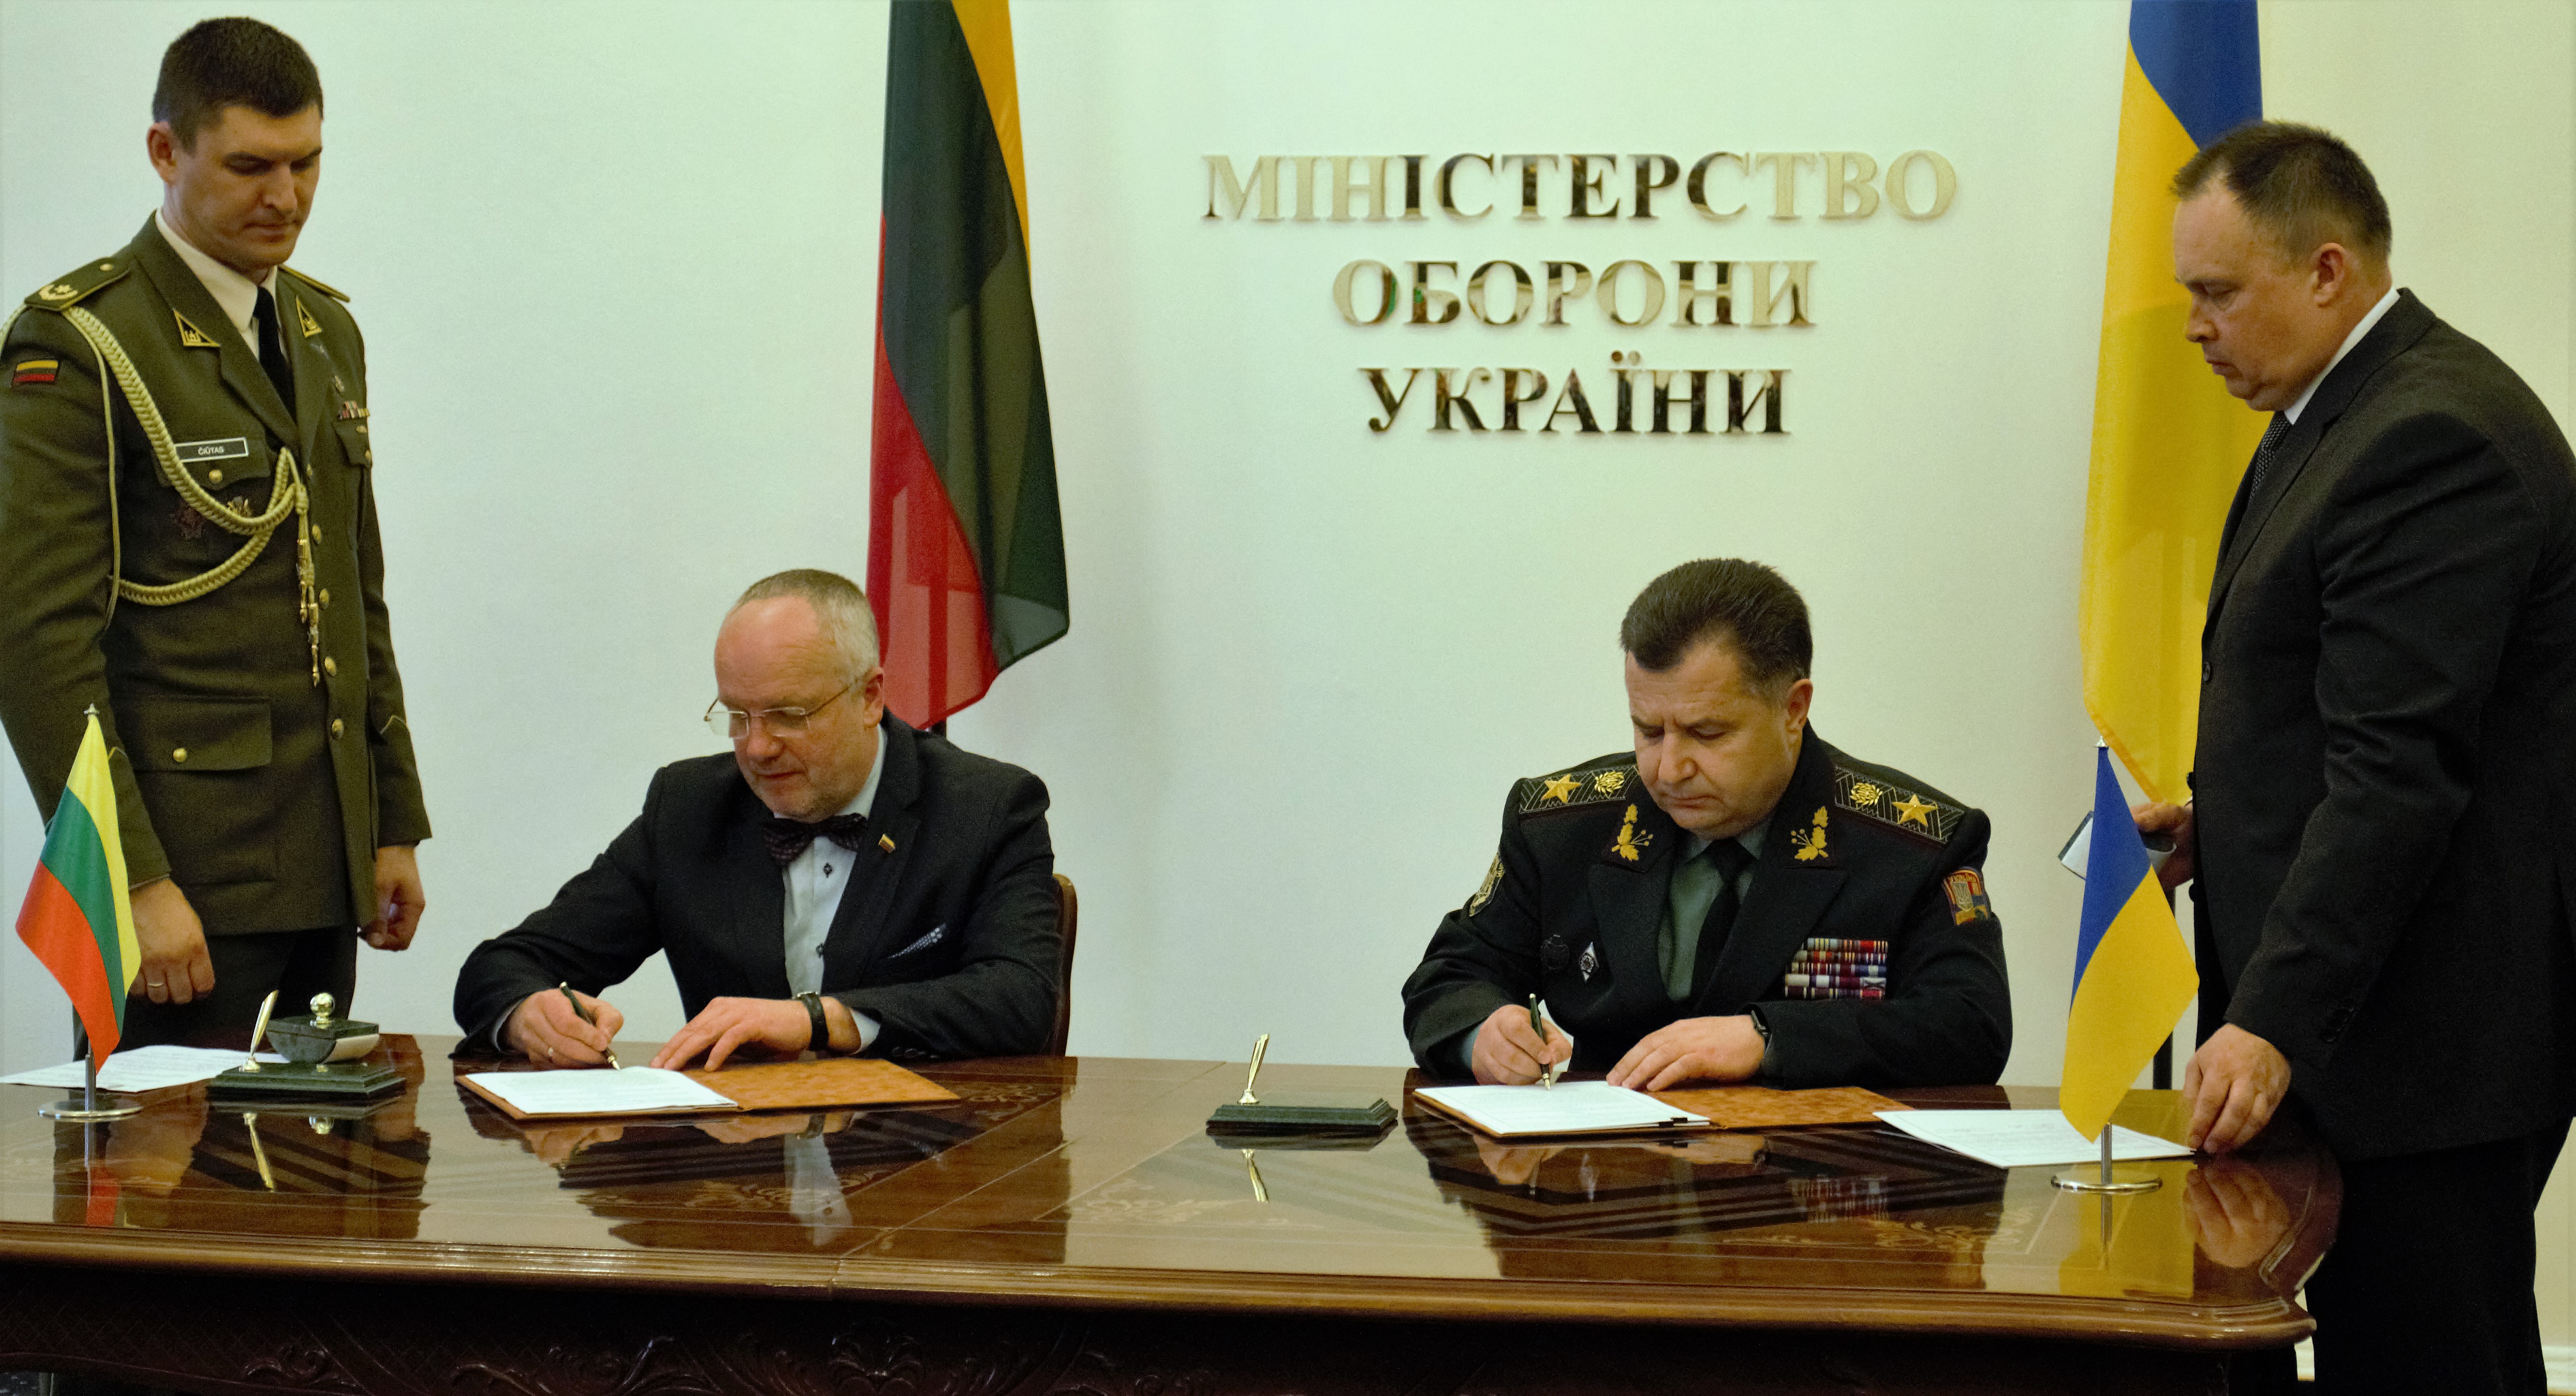 Маємо об’єднати сили, щоб зупинити цю агресію, — міністр охорони краю Литви